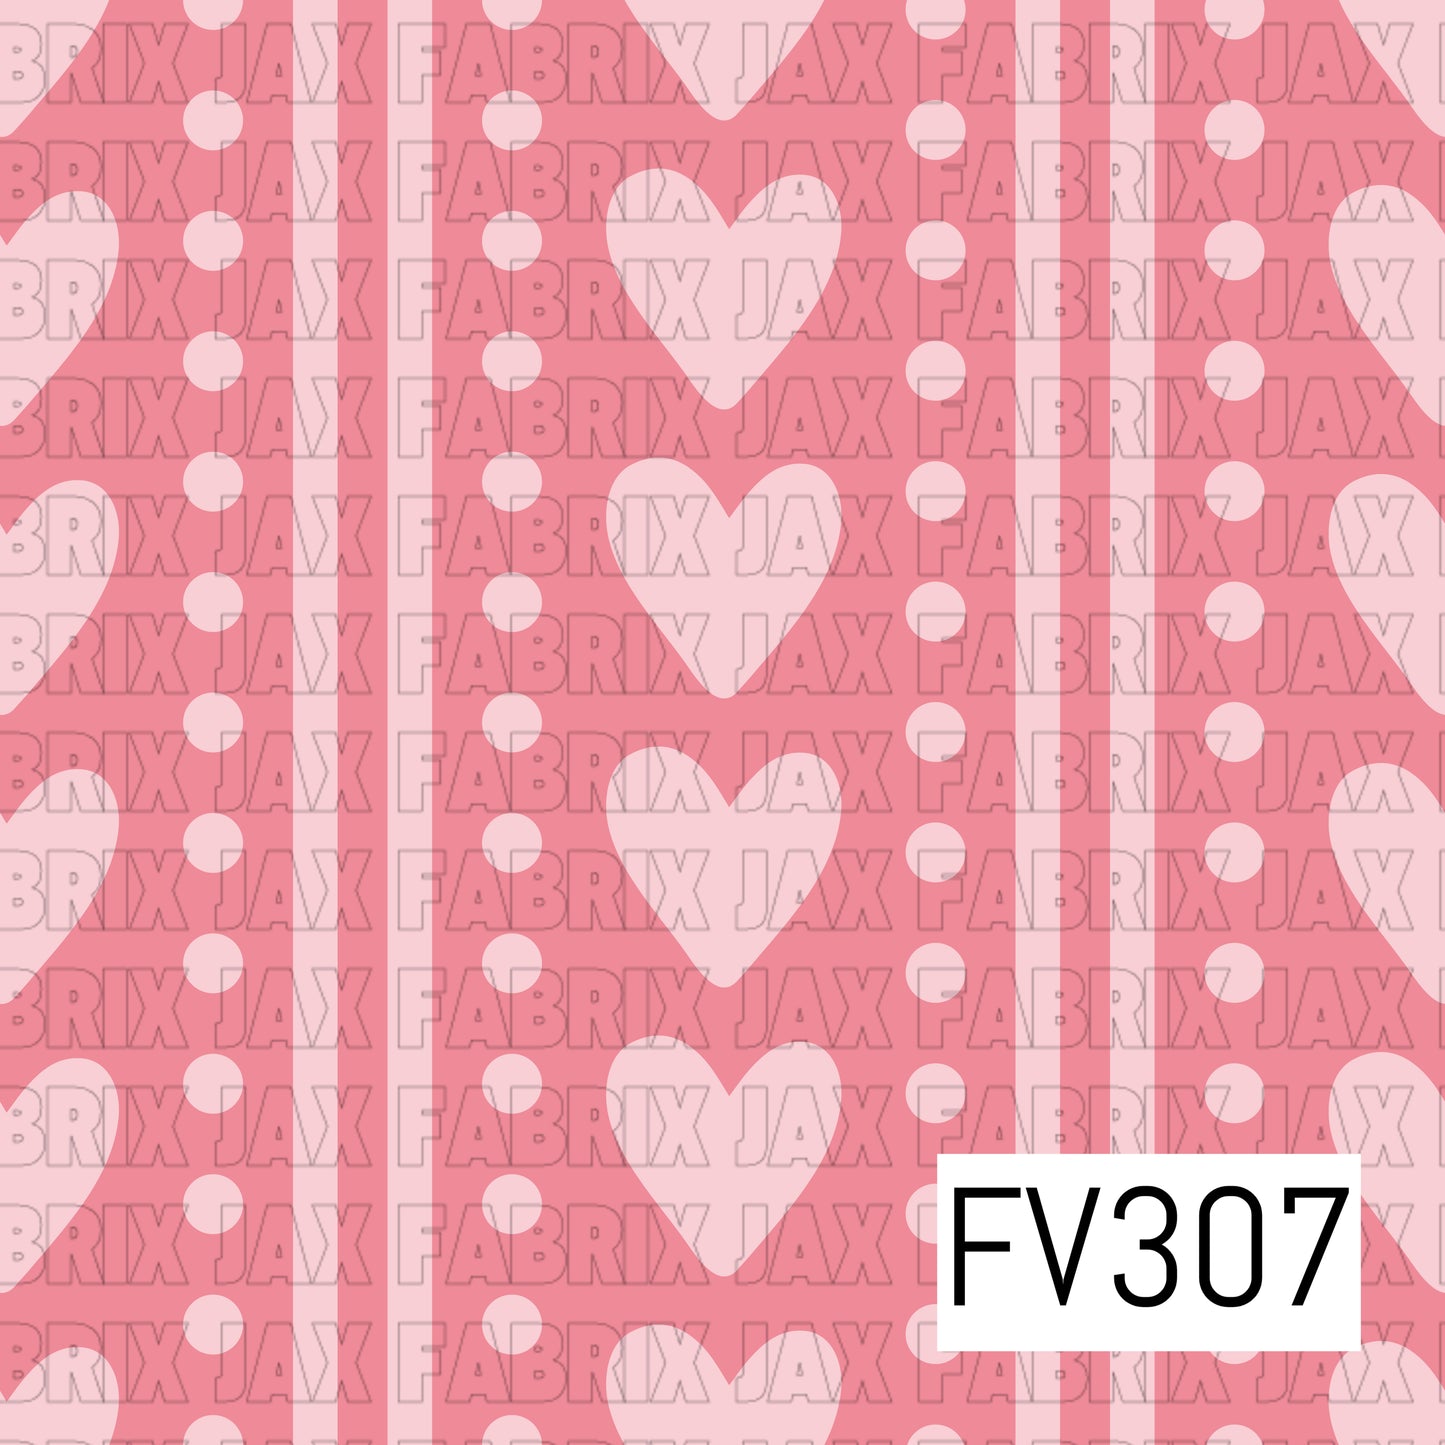 FV307